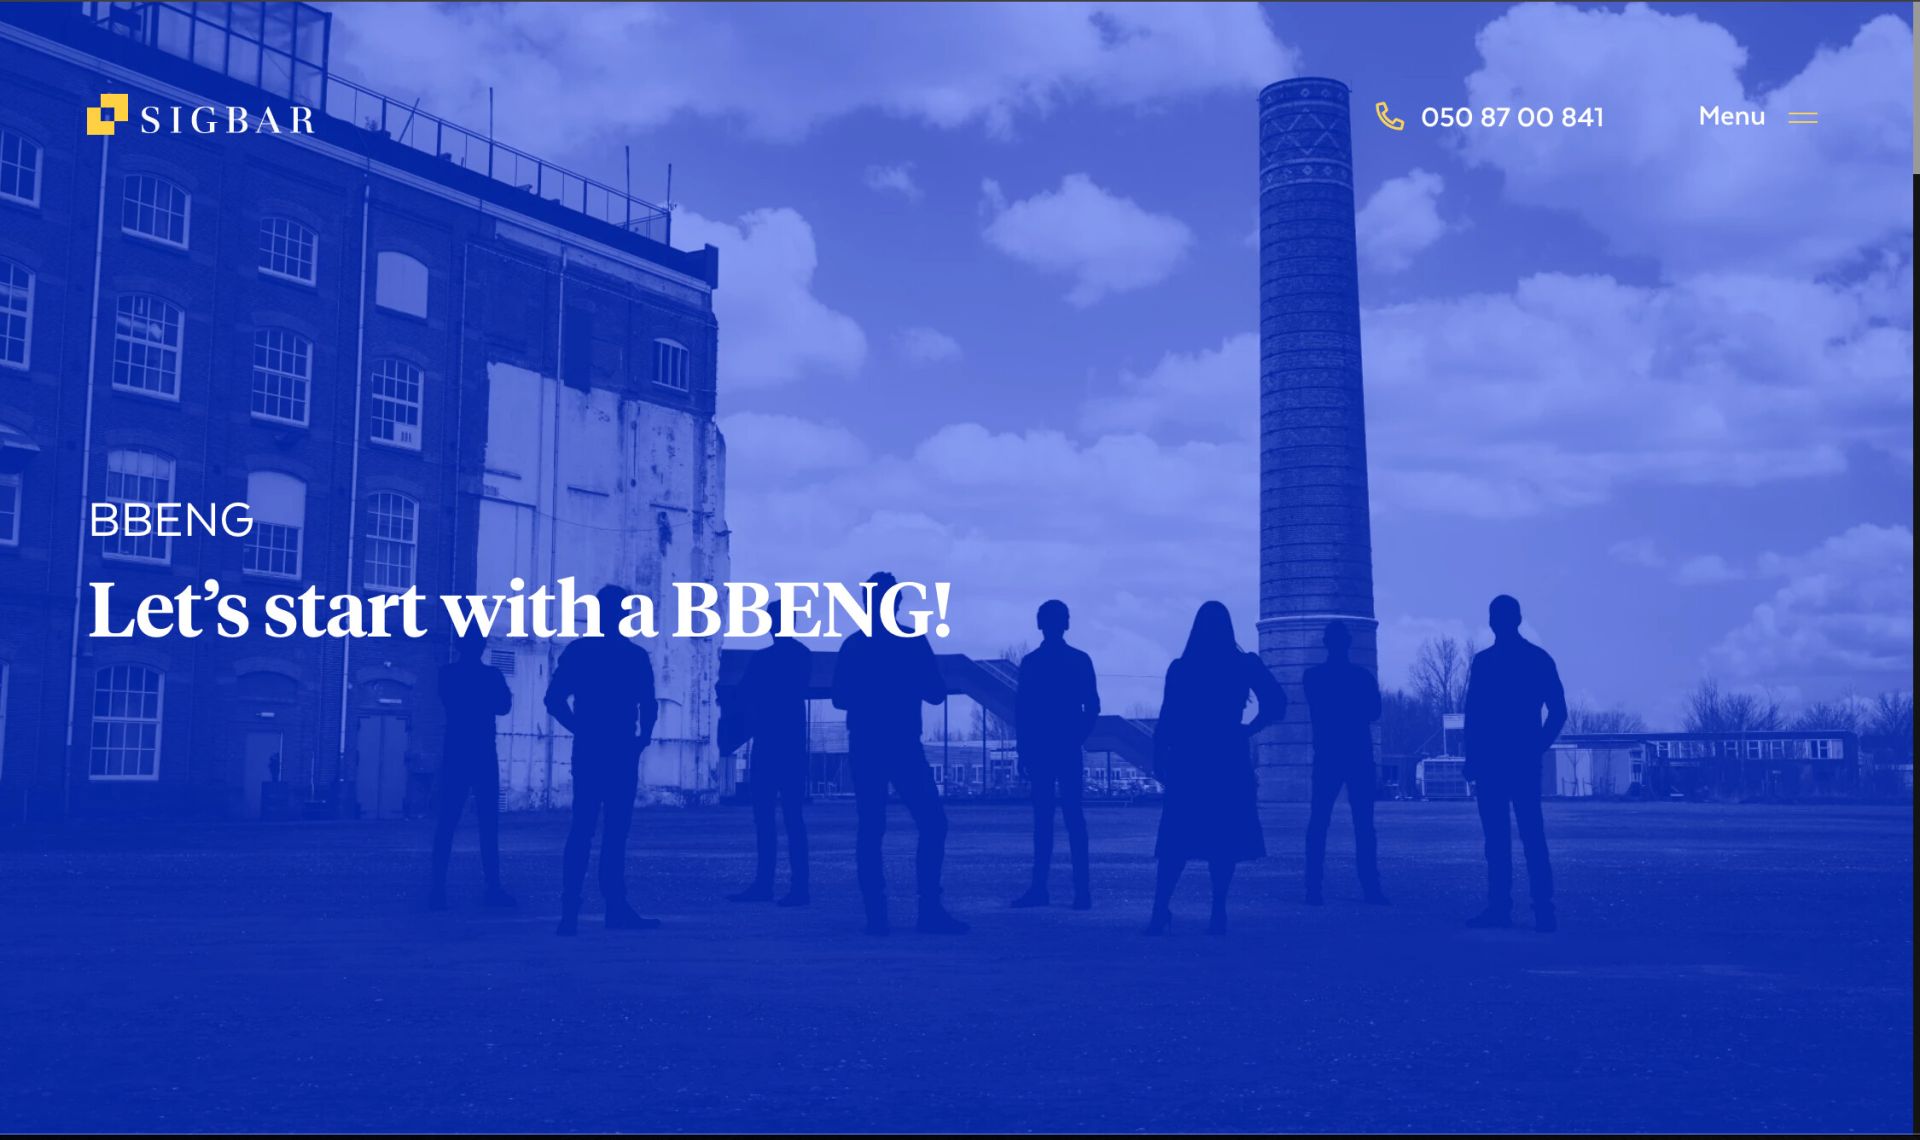 Walk-through of BBENG's website